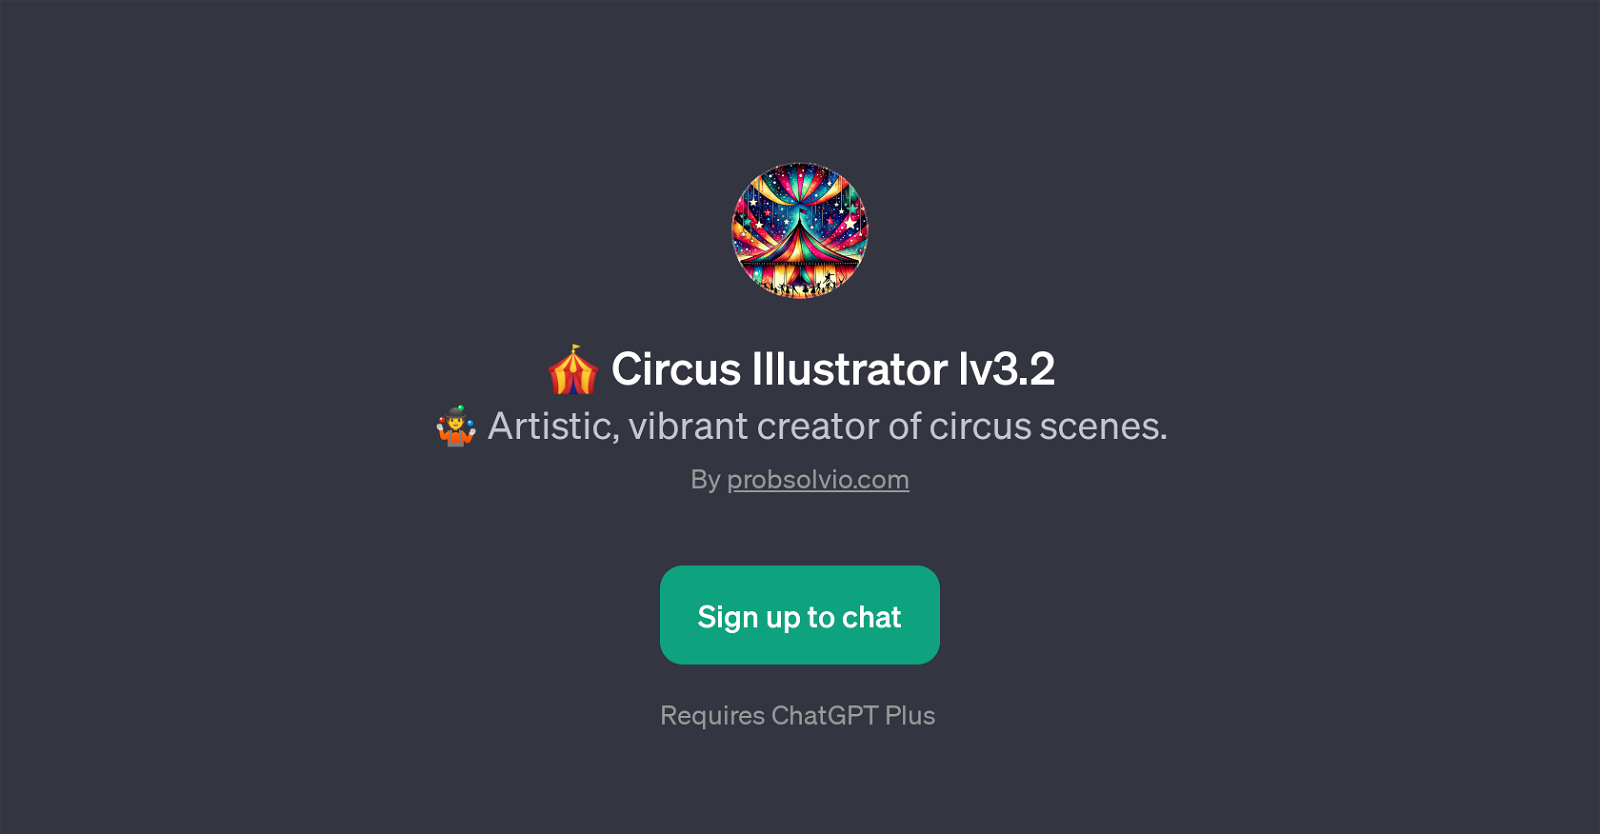 Circus Illustrator lv3.2 website